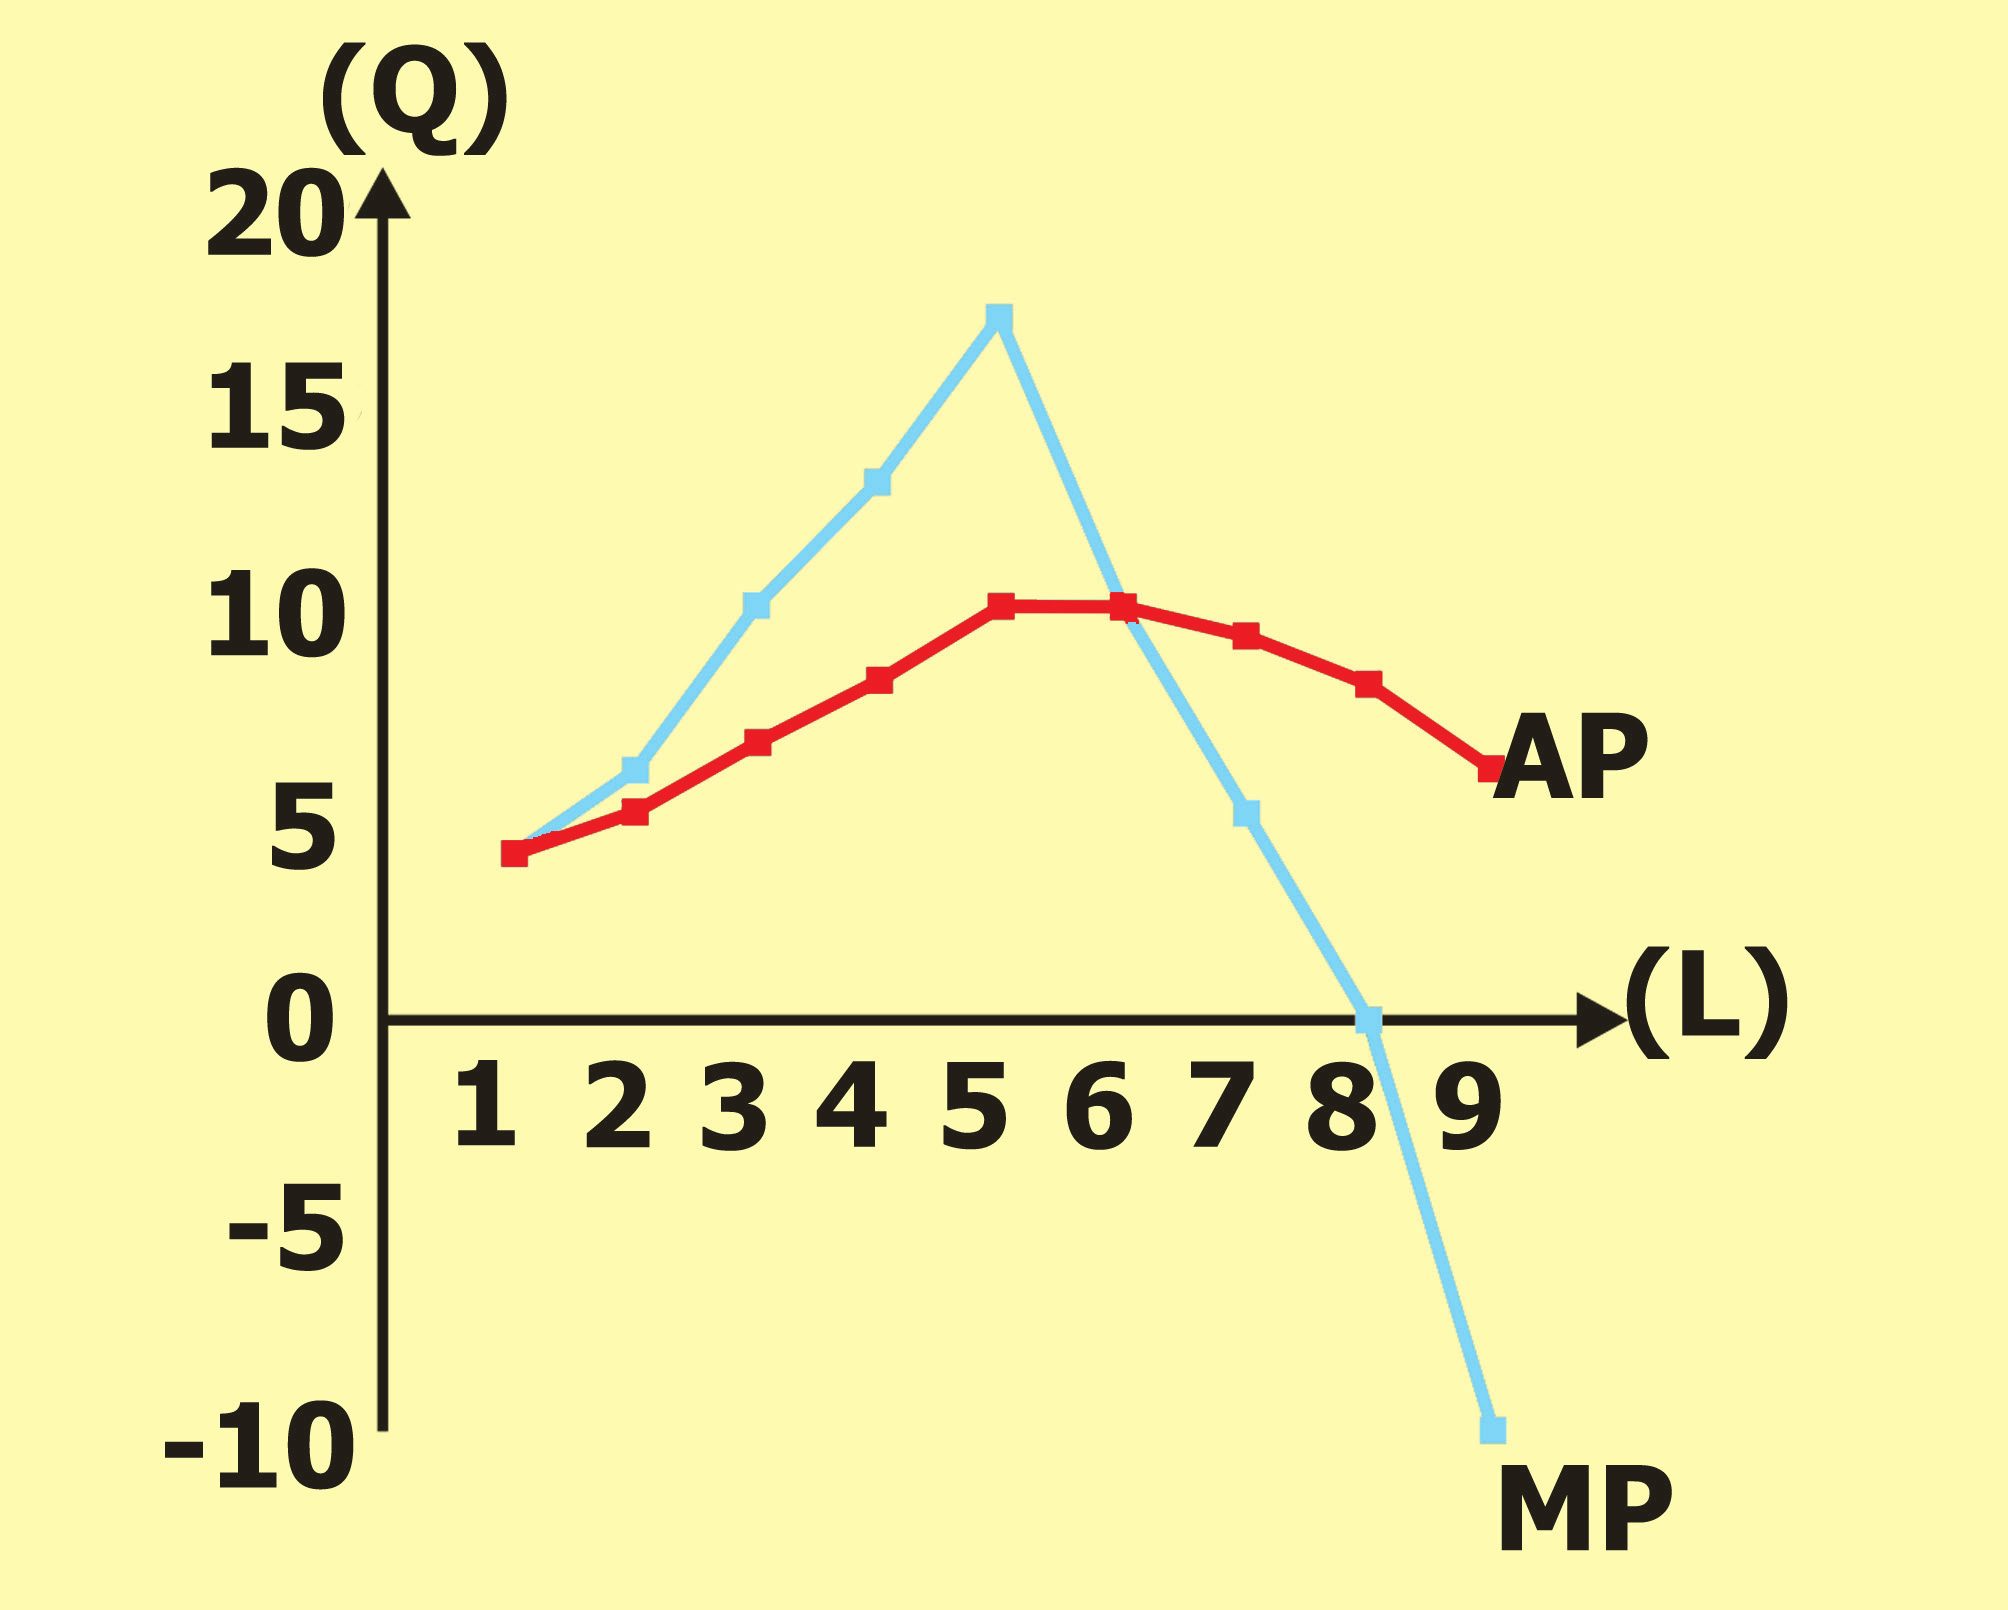 Αριθμός εργατών (L) Συνολικό προϊόν (TP ή Q) Μέσο προϊόν AP= Q/L Οριακό προϊόν MP= ΔQ/ΔL 7 65 9.3 5 8 65 8.1 0 9 55 6.